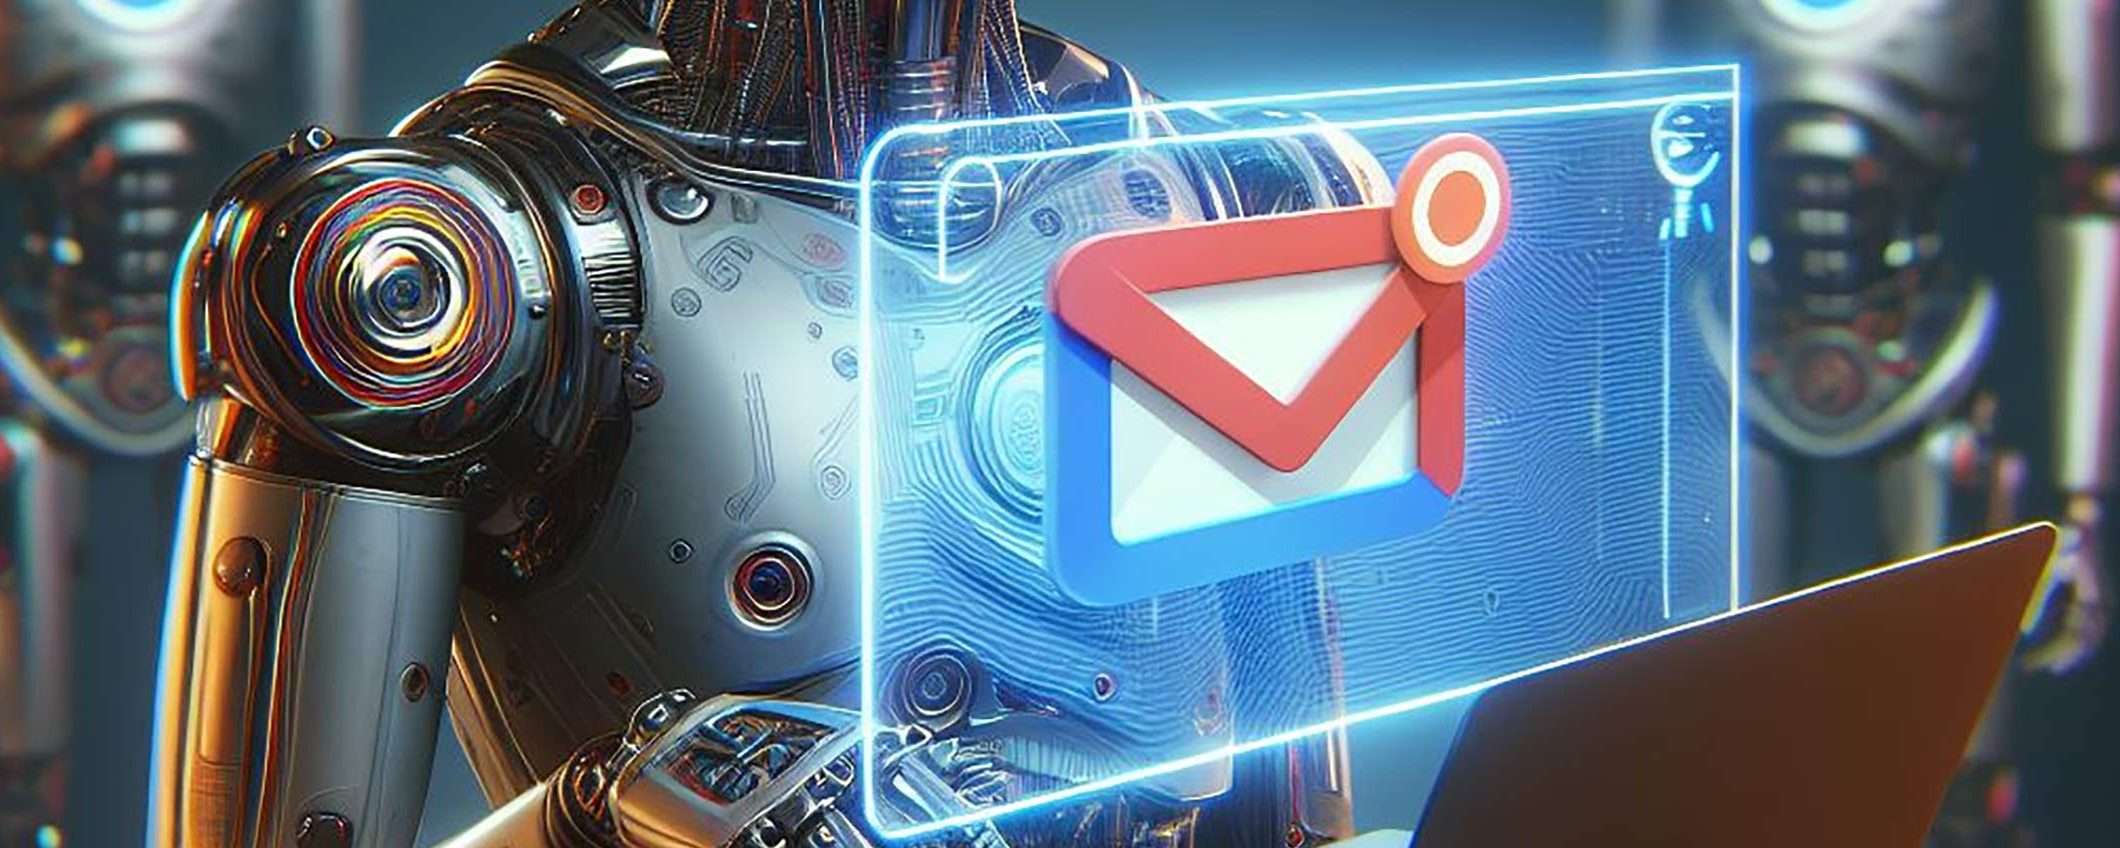 Gmail e IA: la voce per creare le bozze delle email